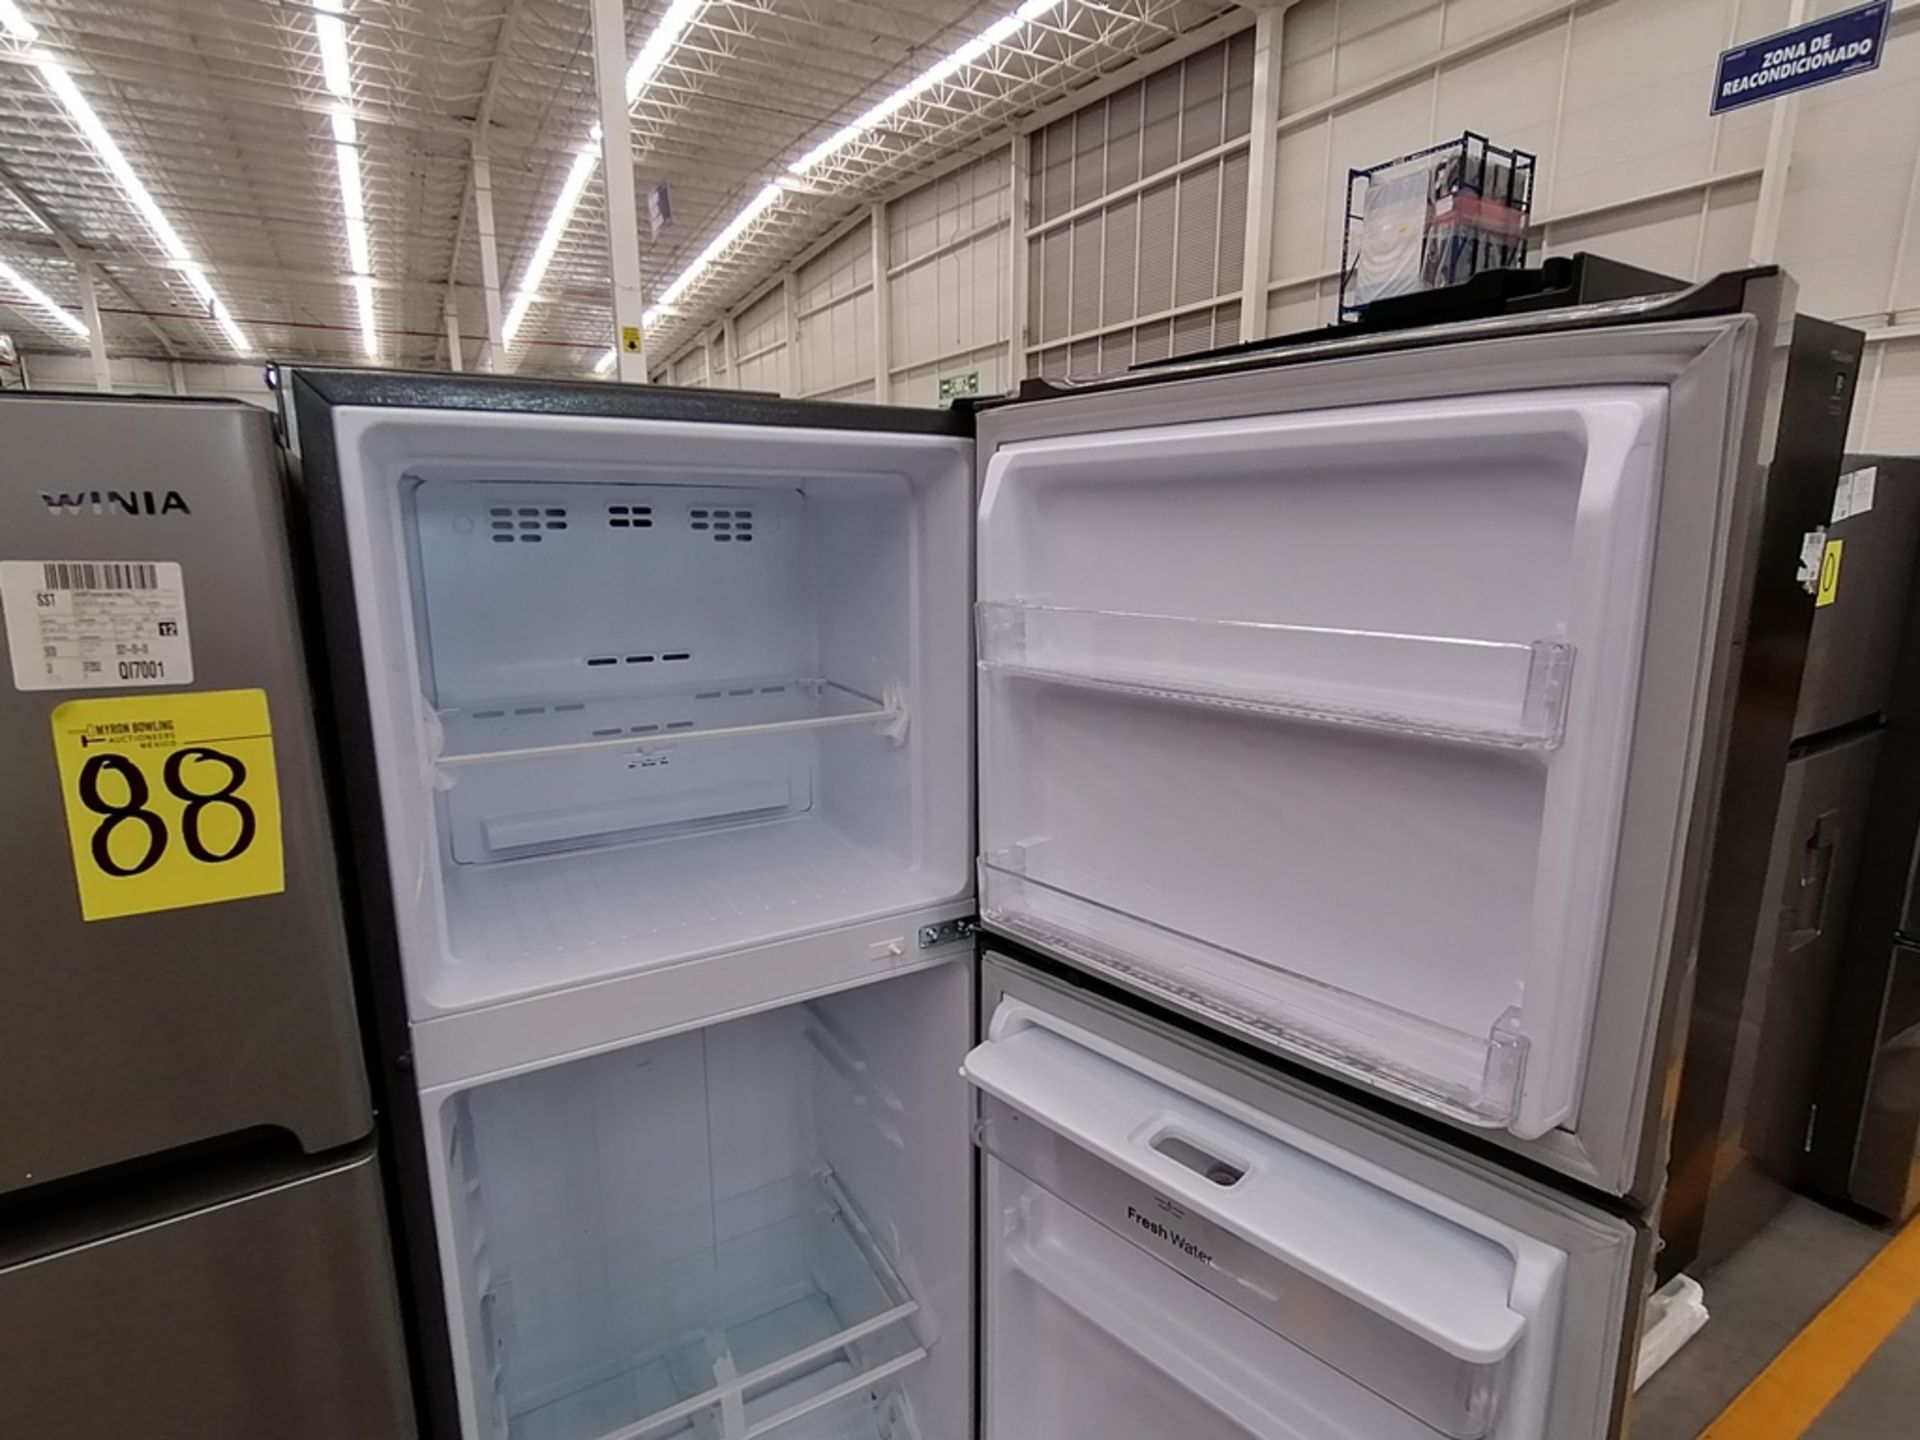 Lote de 2 refrigeradores incluye: 1 Refrigerador, Marca Winia, Modelo DFR25210GN, Serie MR219N11602 - Image 4 of 15